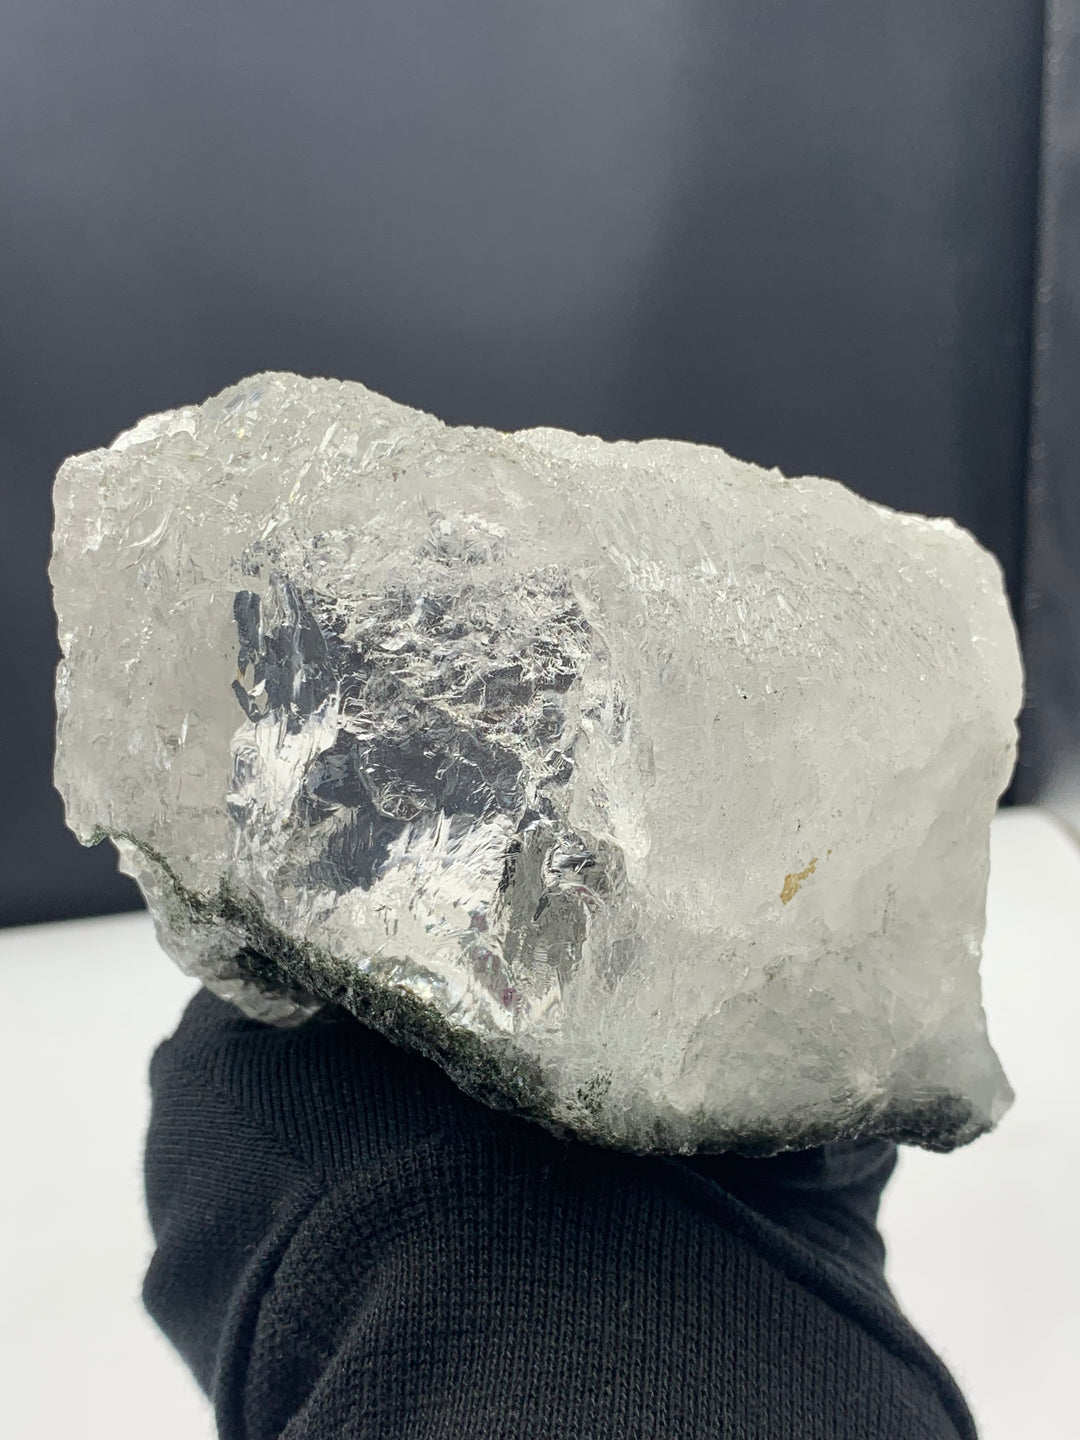 Stunning Quartz Crystal